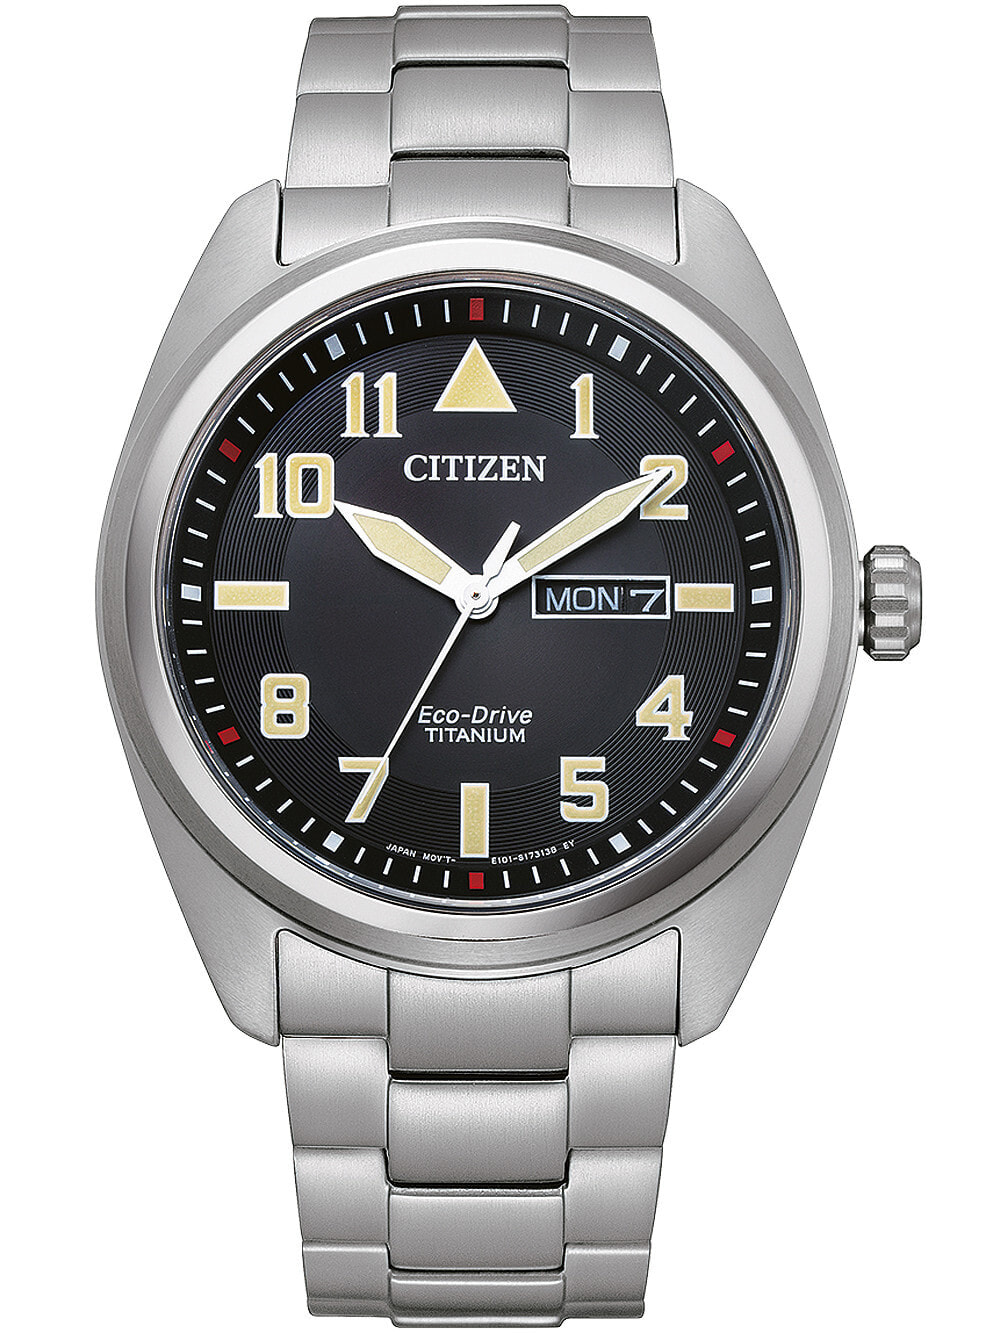 Мужские наручные часы с серебряным браслетом Citizen BM8560-88E Eco-Drive Super-Titanium mens 42mm 10ATM